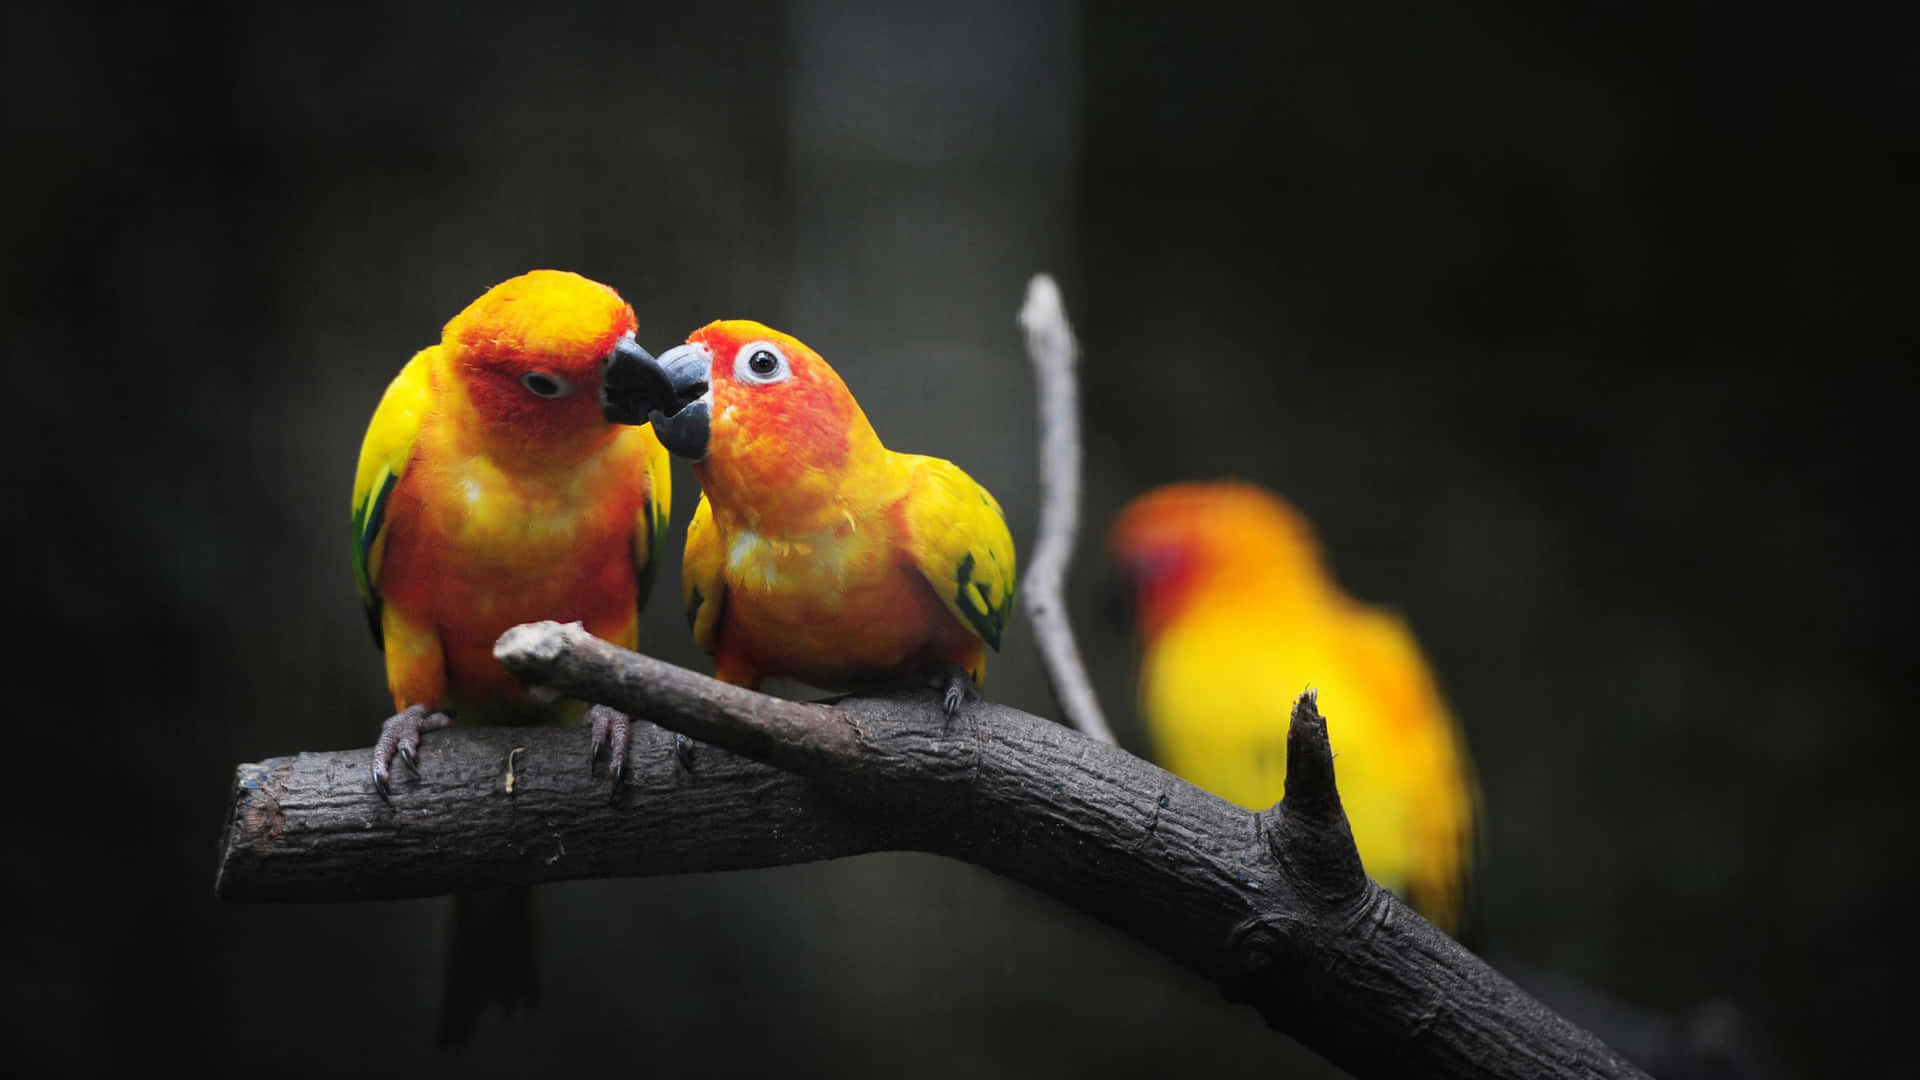 Imagende Dos Pájaros Enamorados Besándose En Escala De Grises.